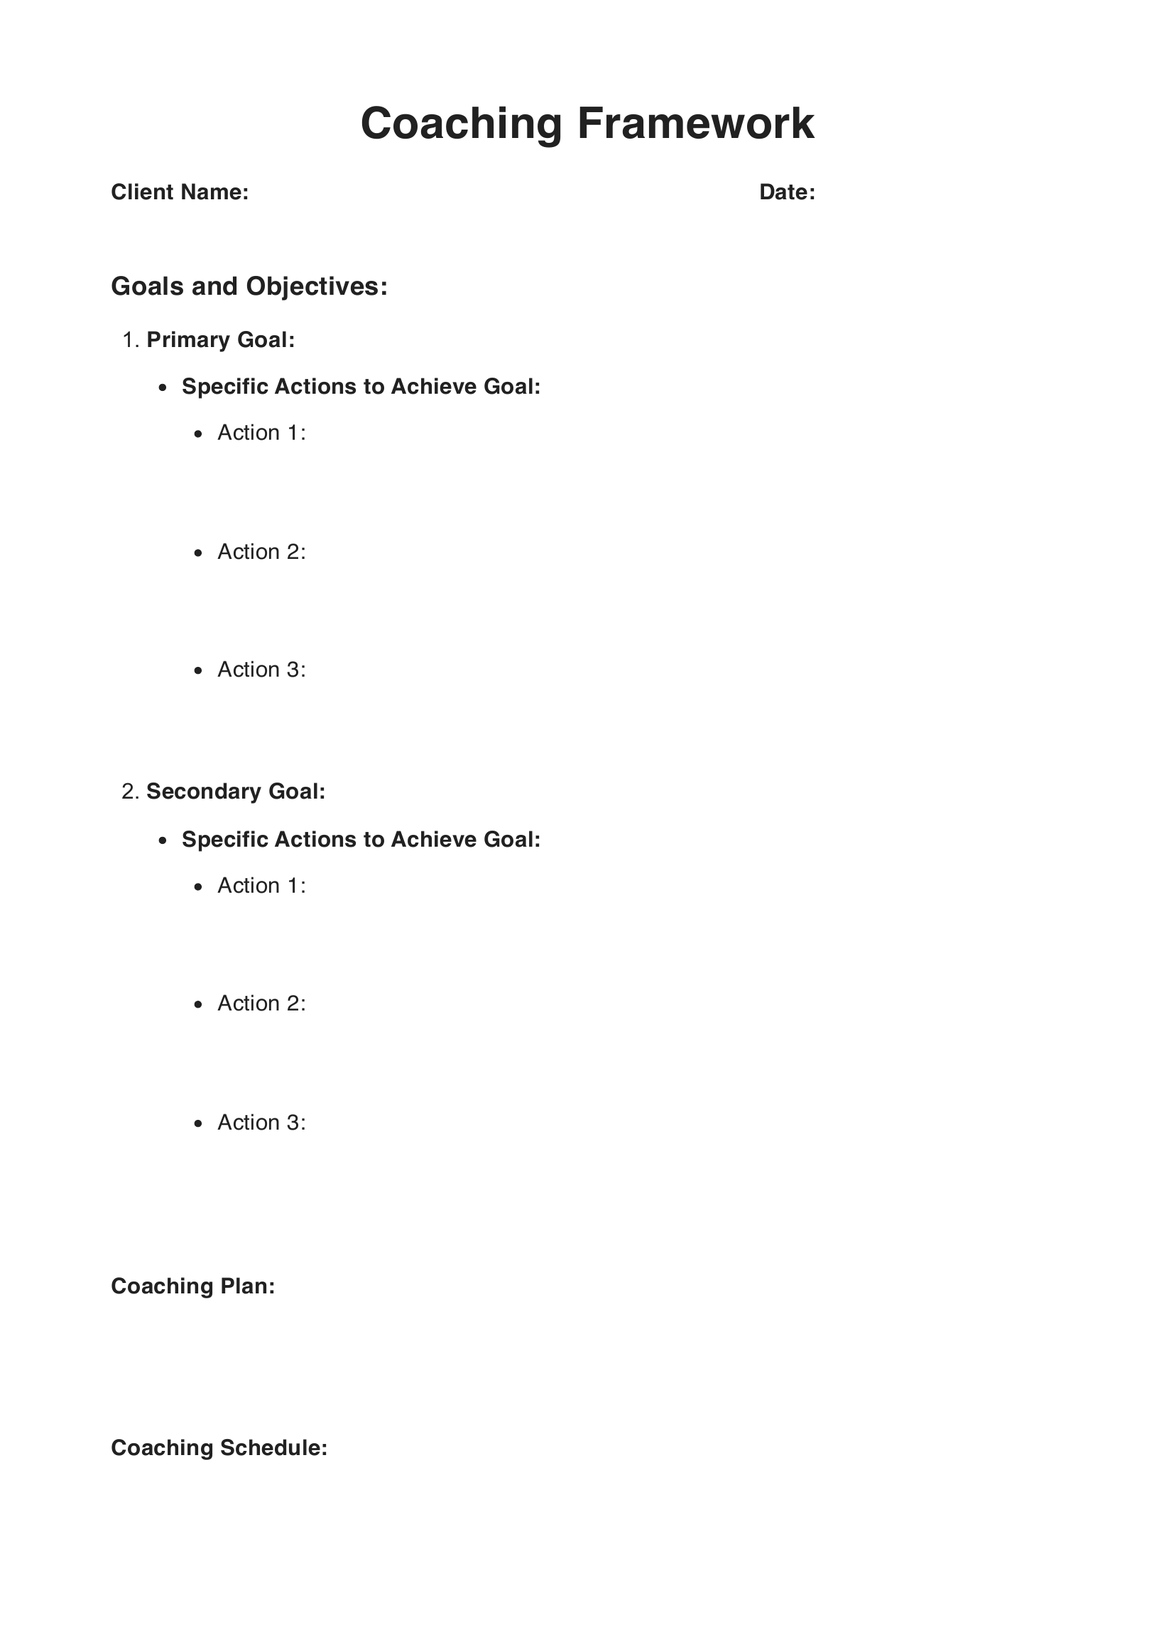 Coaching Framework PDF Example